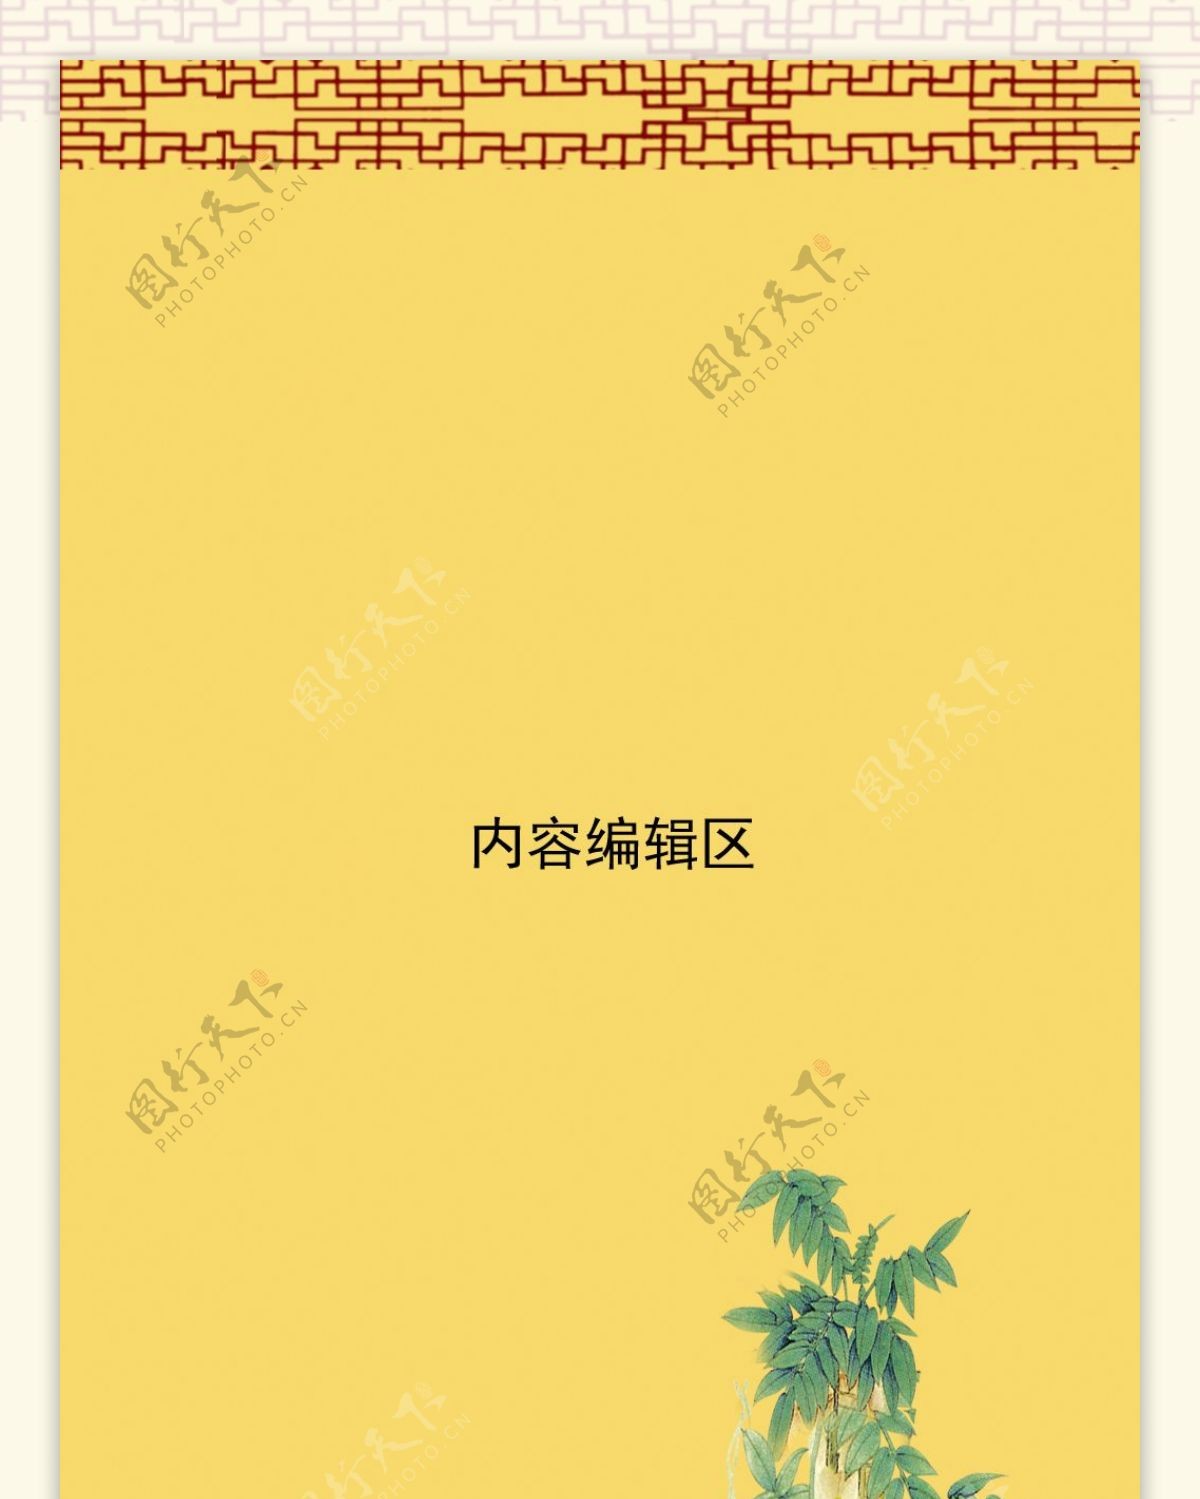 精美中国风展架设计模板素材画面